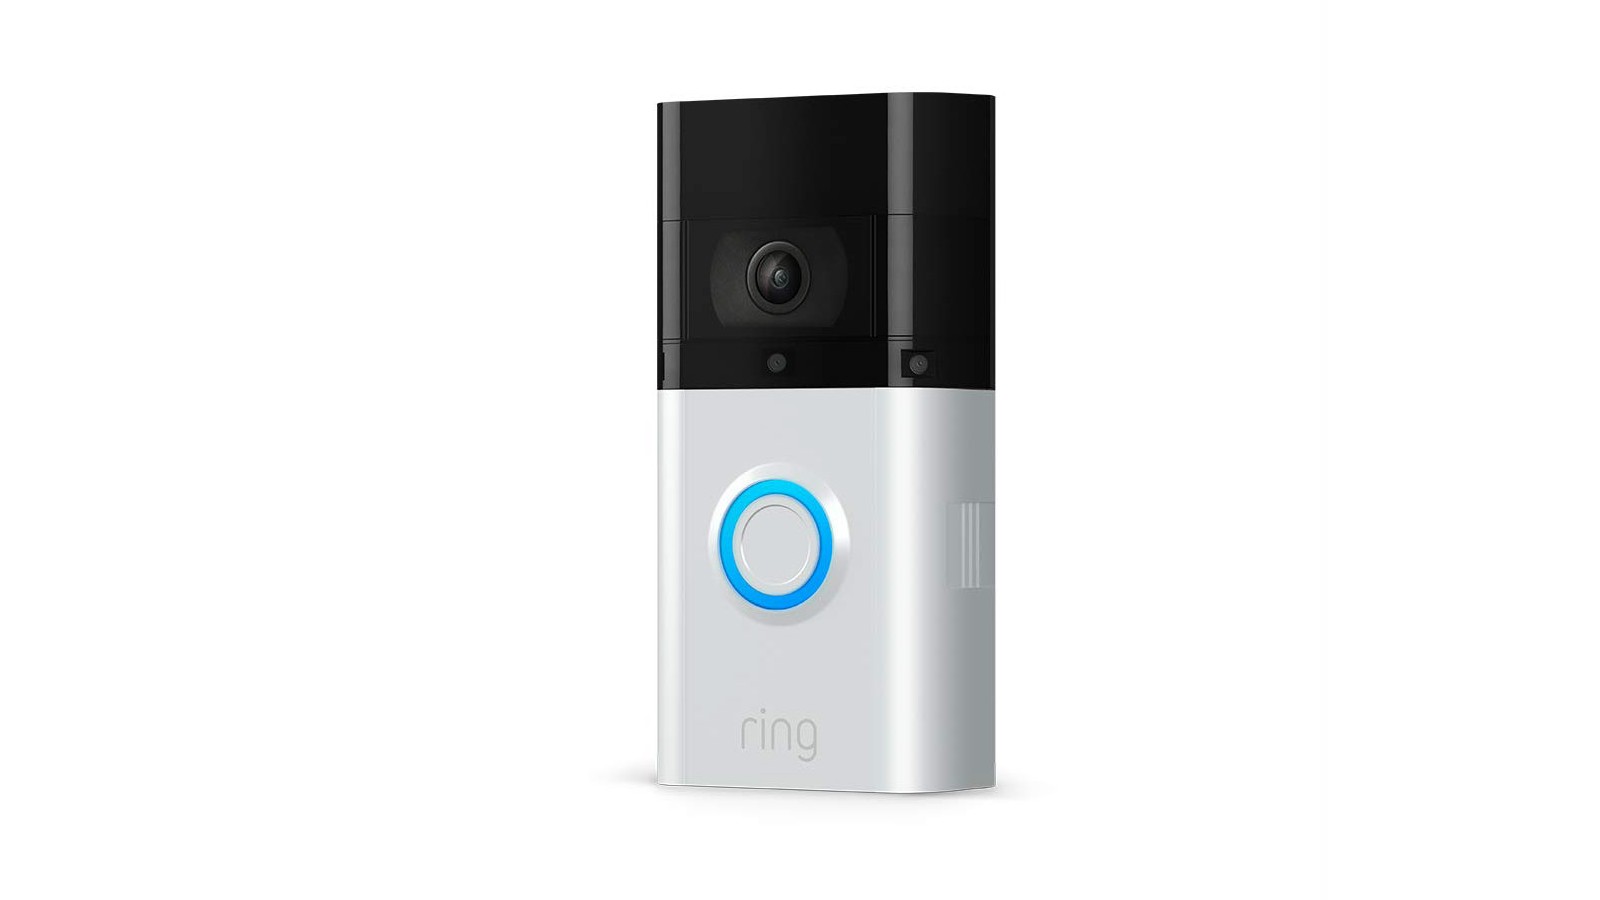 black friday ring video doorbell